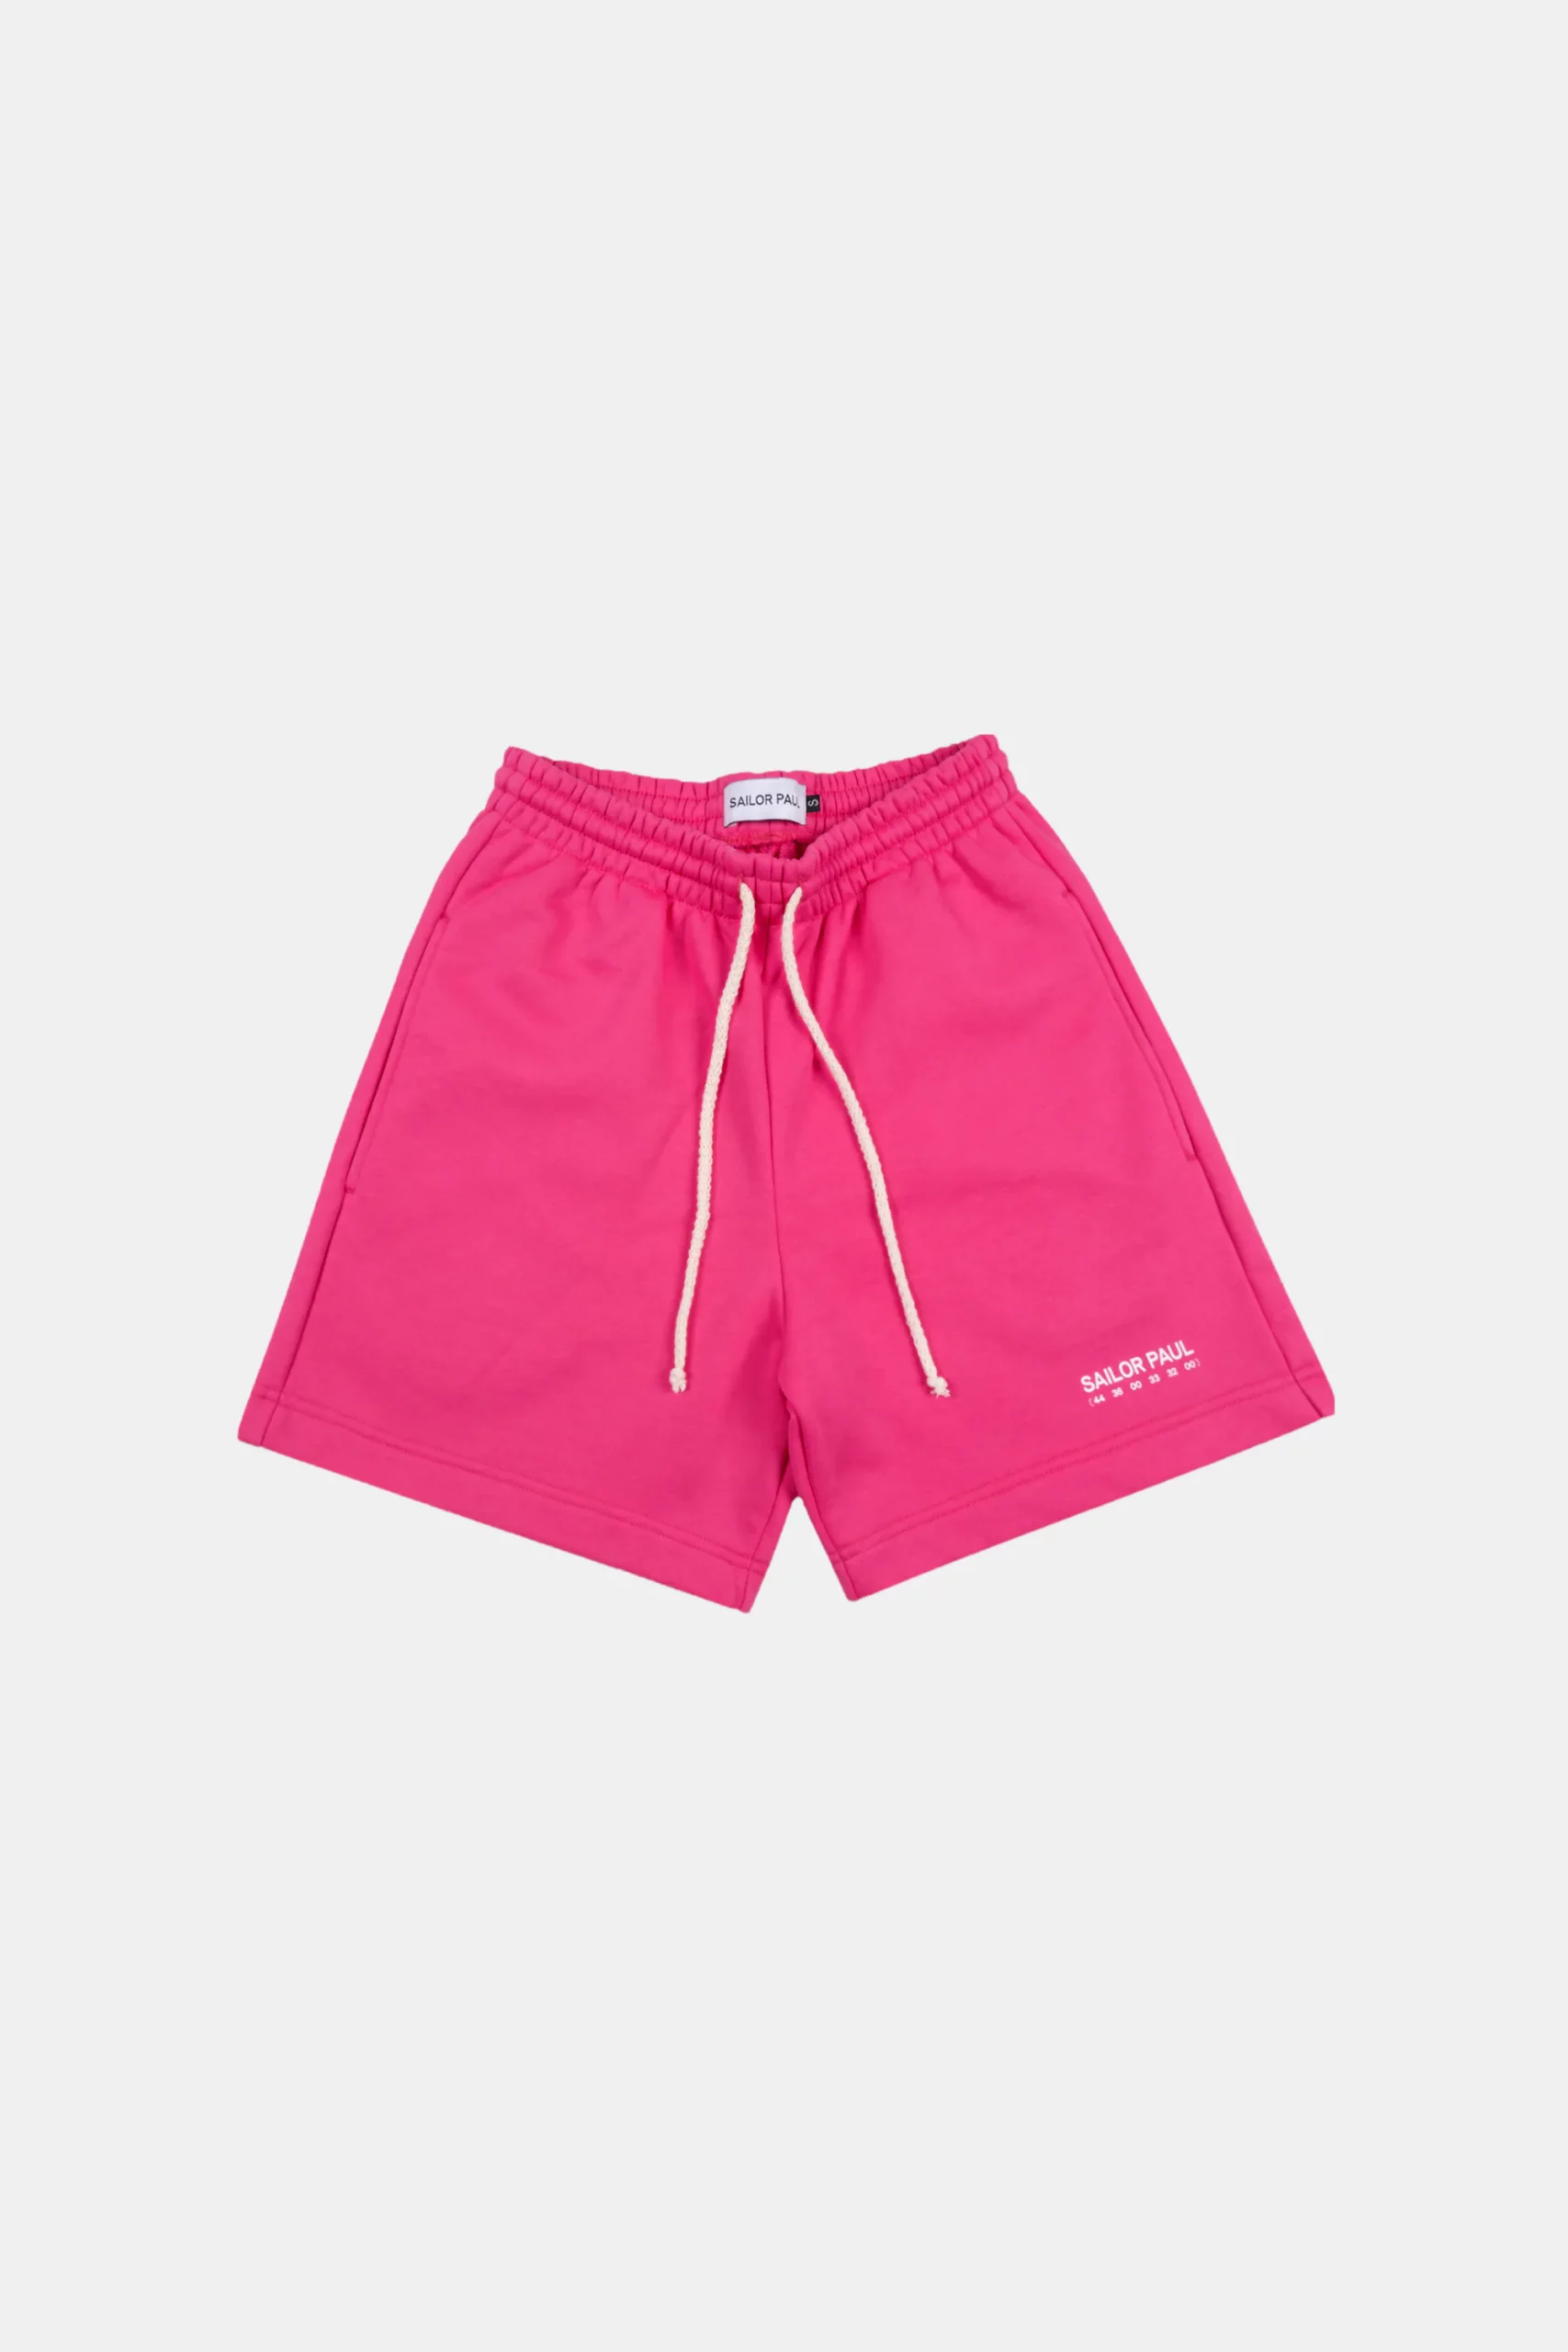 shorty sailorpaul tet logo pink w 1